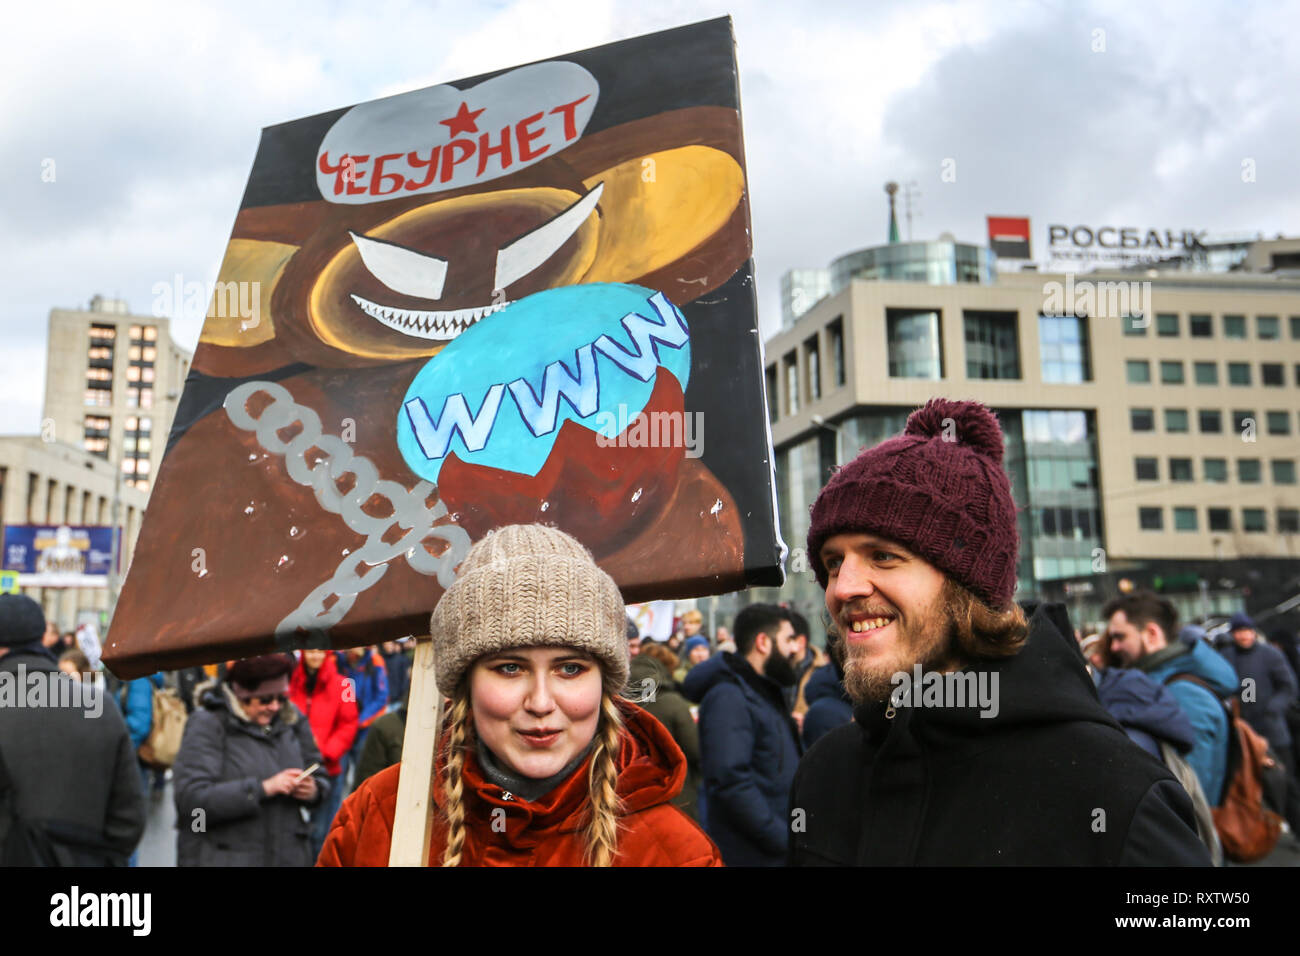 Un manifestant vu holding a placard lors de la manifestation. Les participants à un rassemblement de l'opposition dans le centre de Moscou et de protester contre le contrôle de l'état sur l'internet en Russie. Banque D'Images